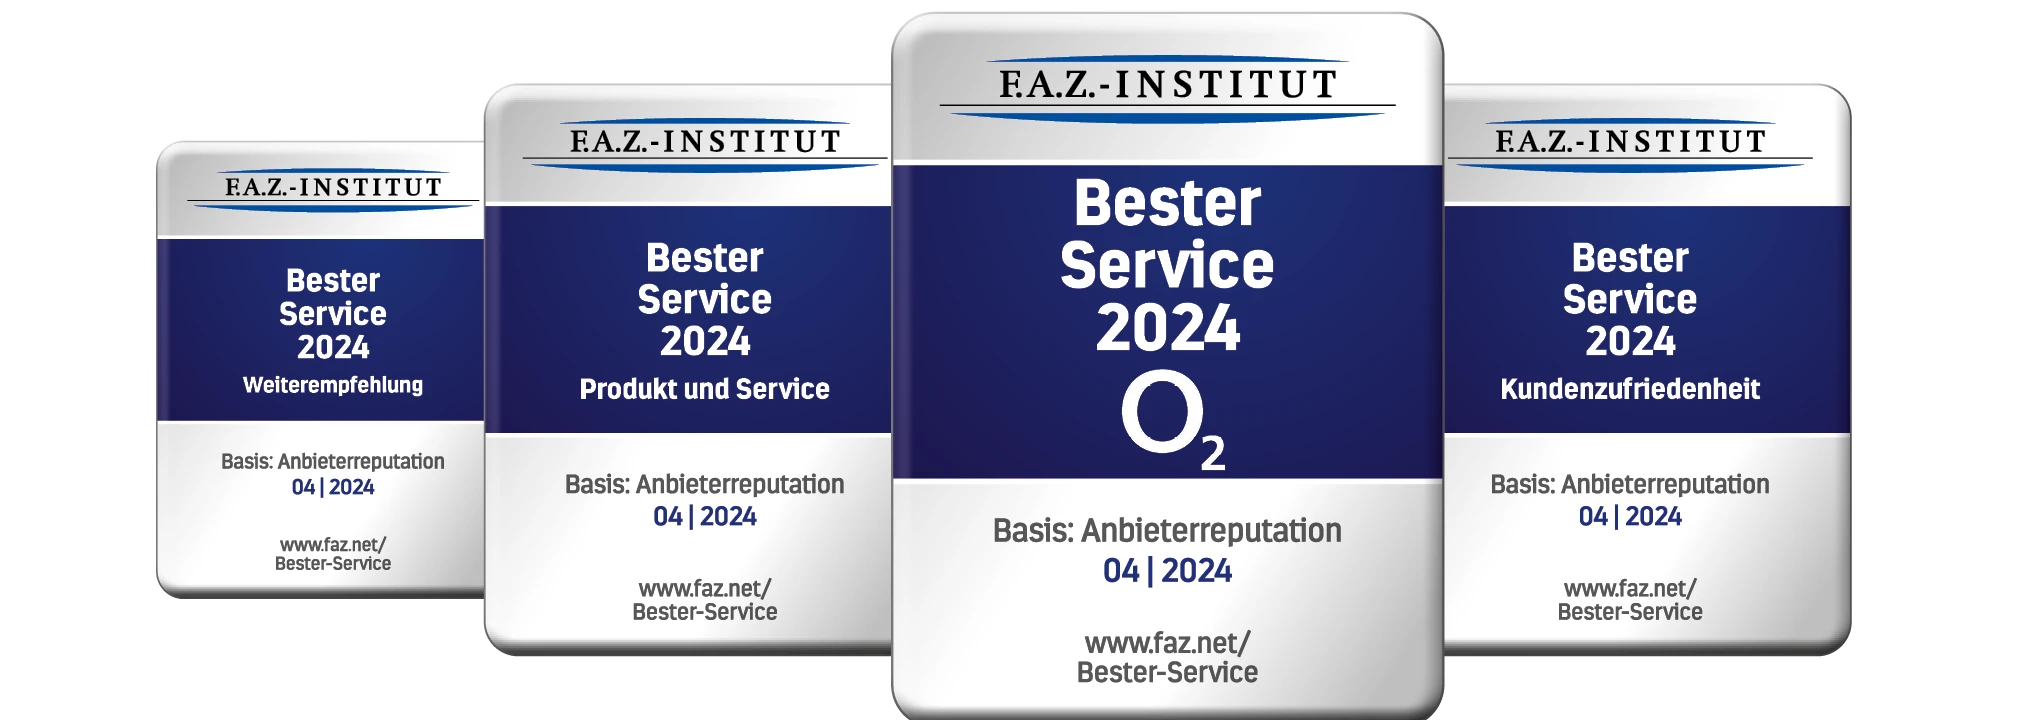 F.A.Z. Institut Bester Service 2024